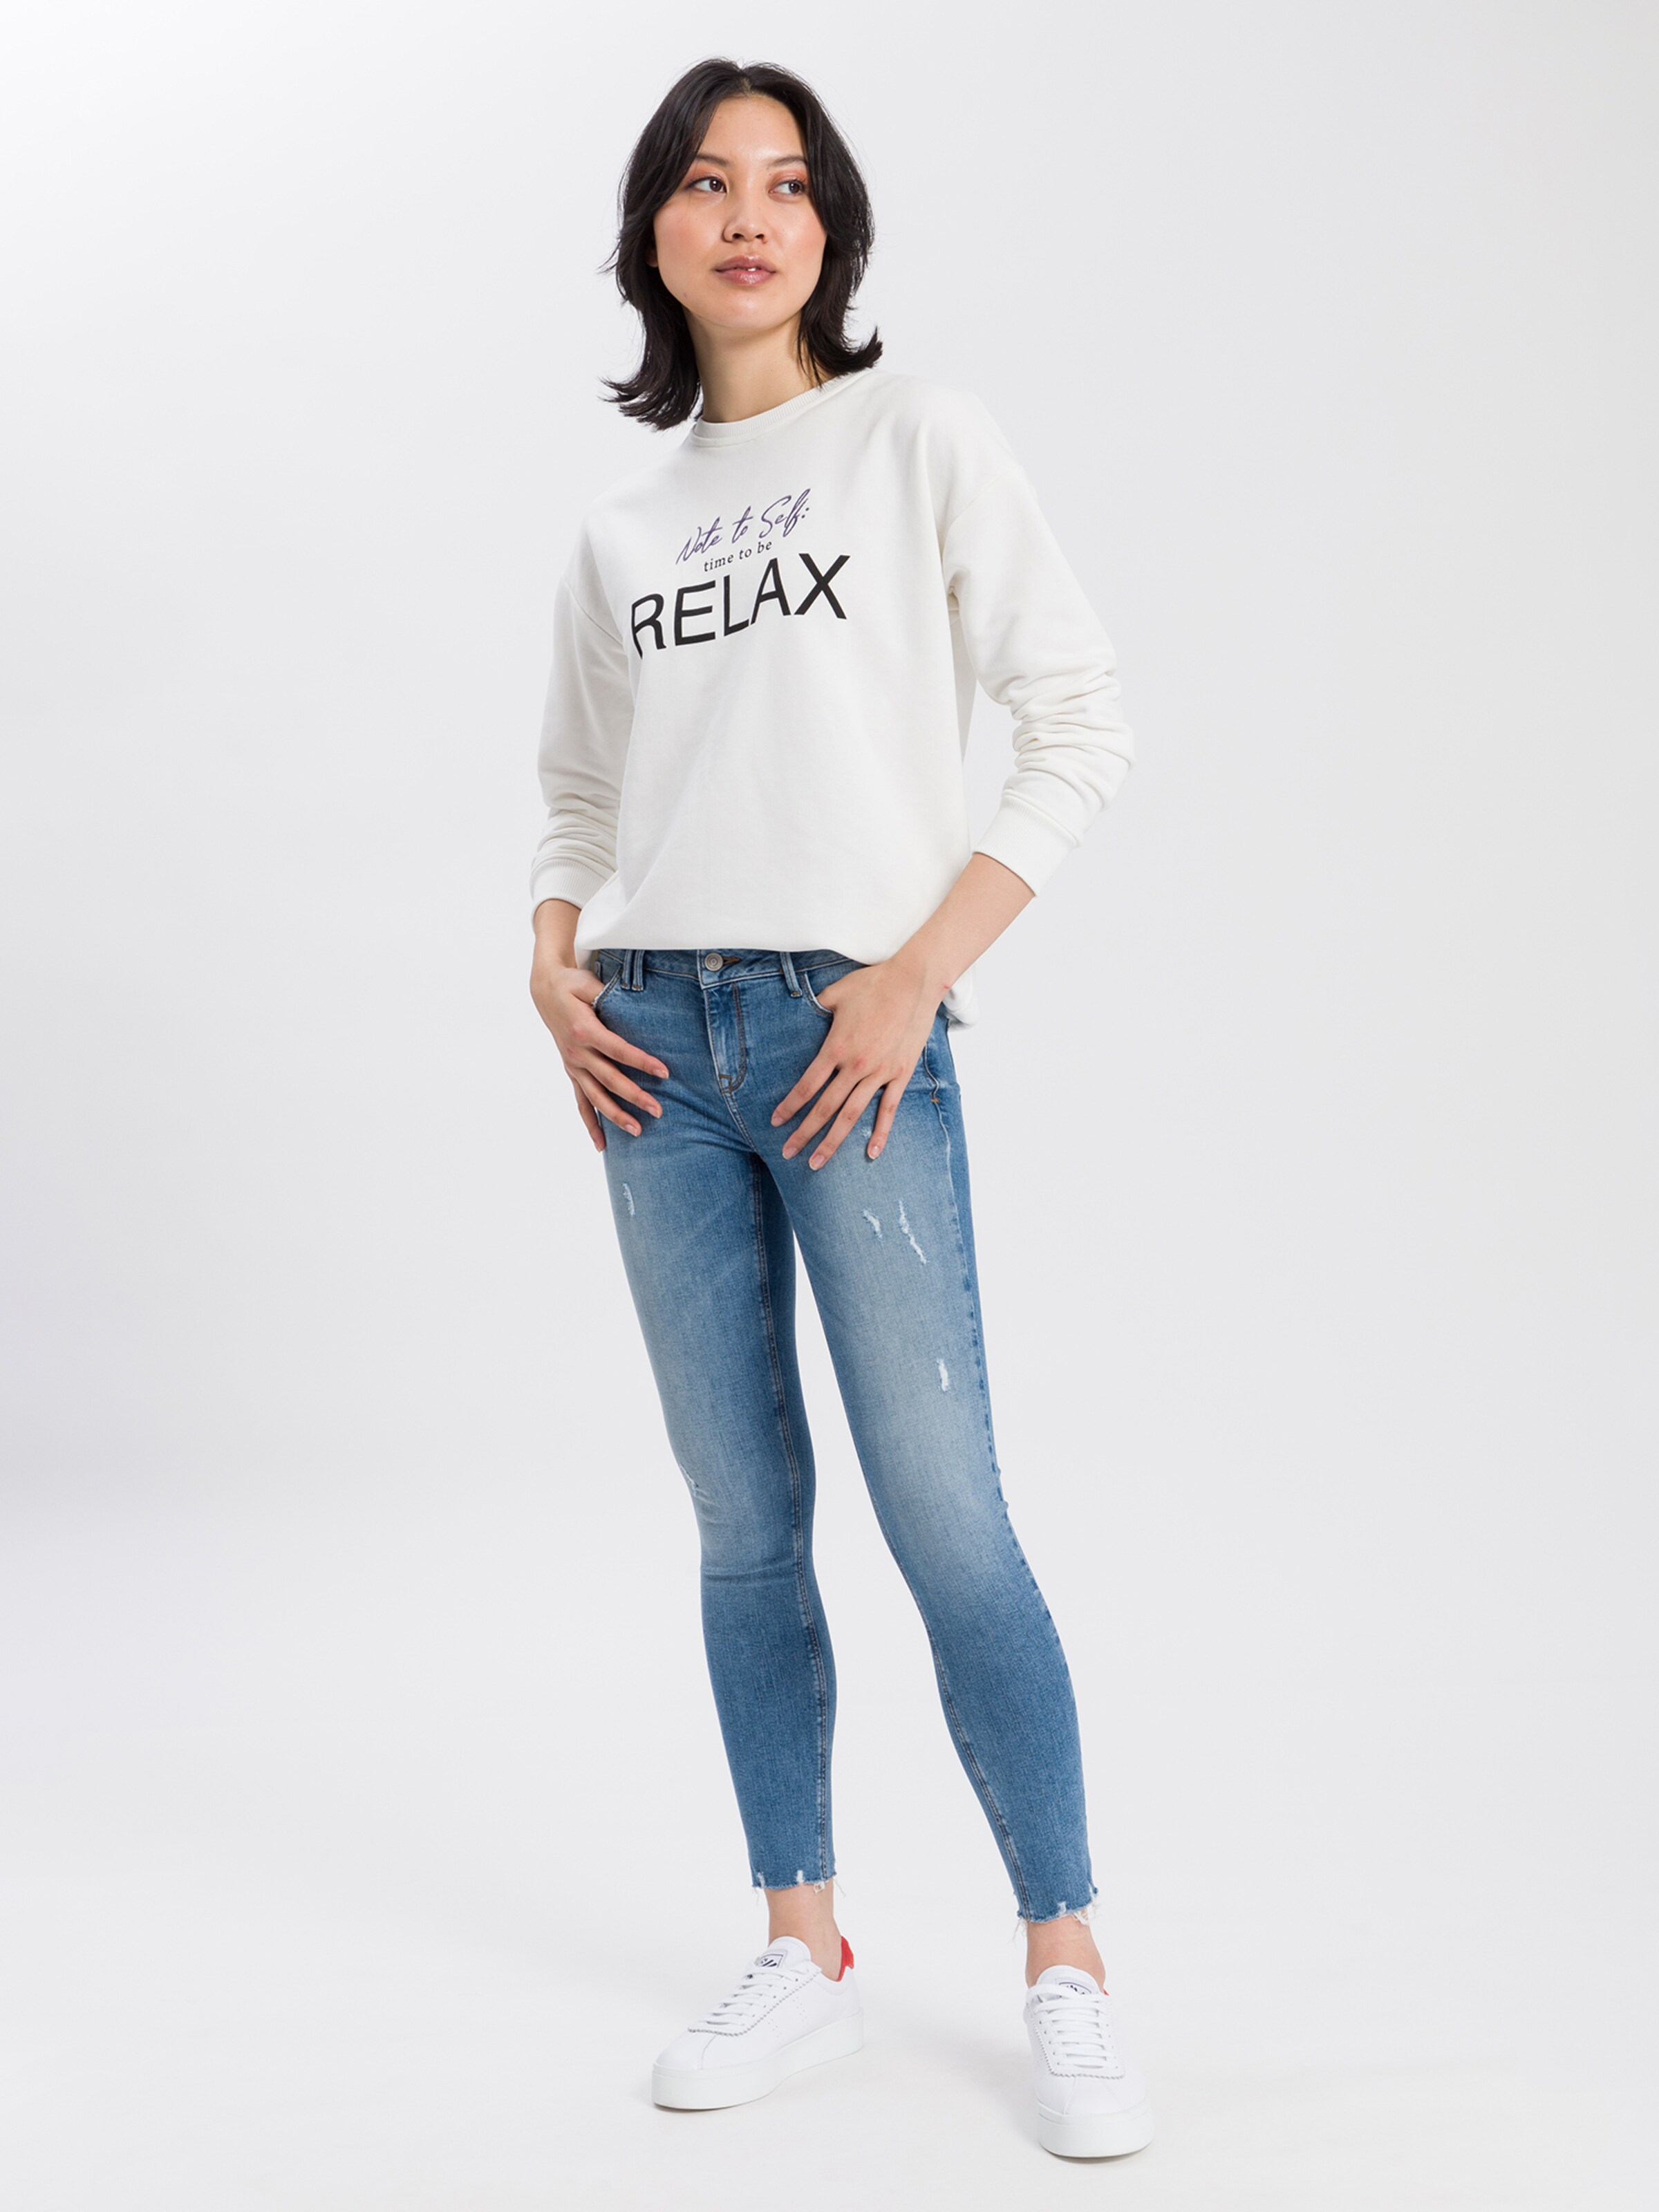 Frauen Sweat Cross Jeans Sweatshirt in Weiß - PL48008